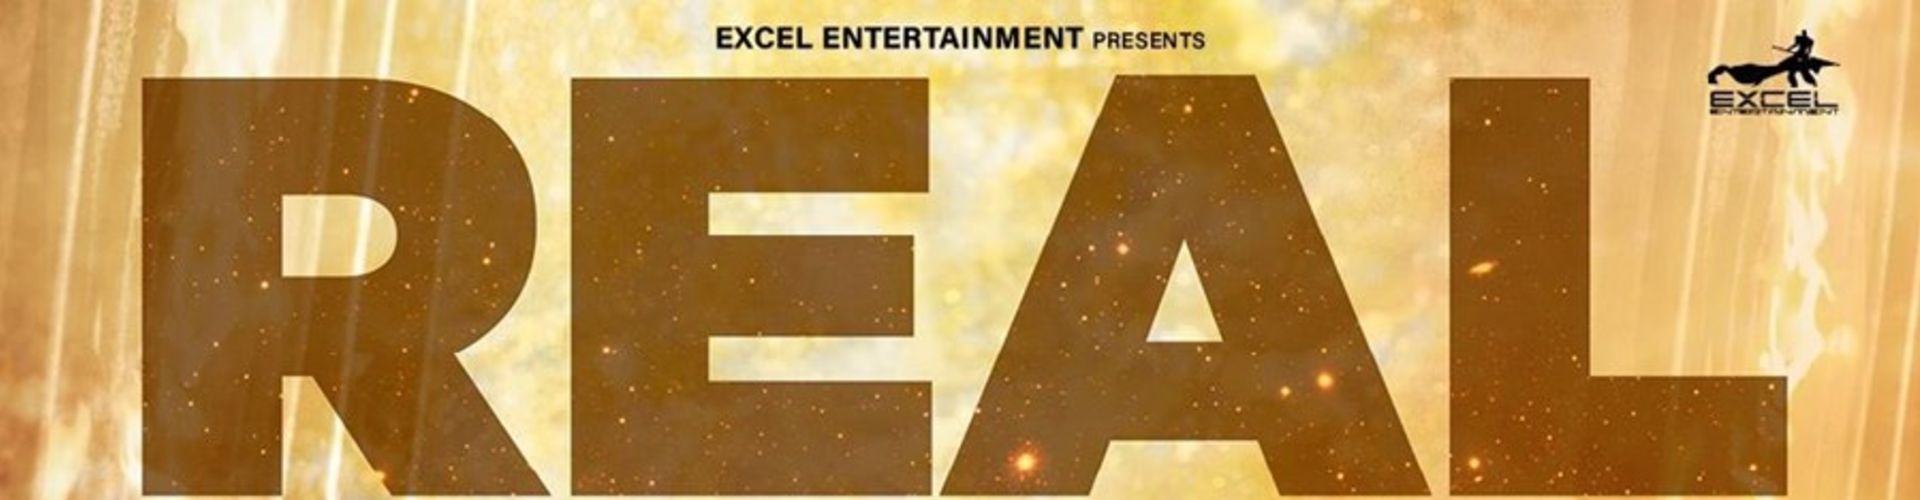 Excel Entertainment Announces Agni